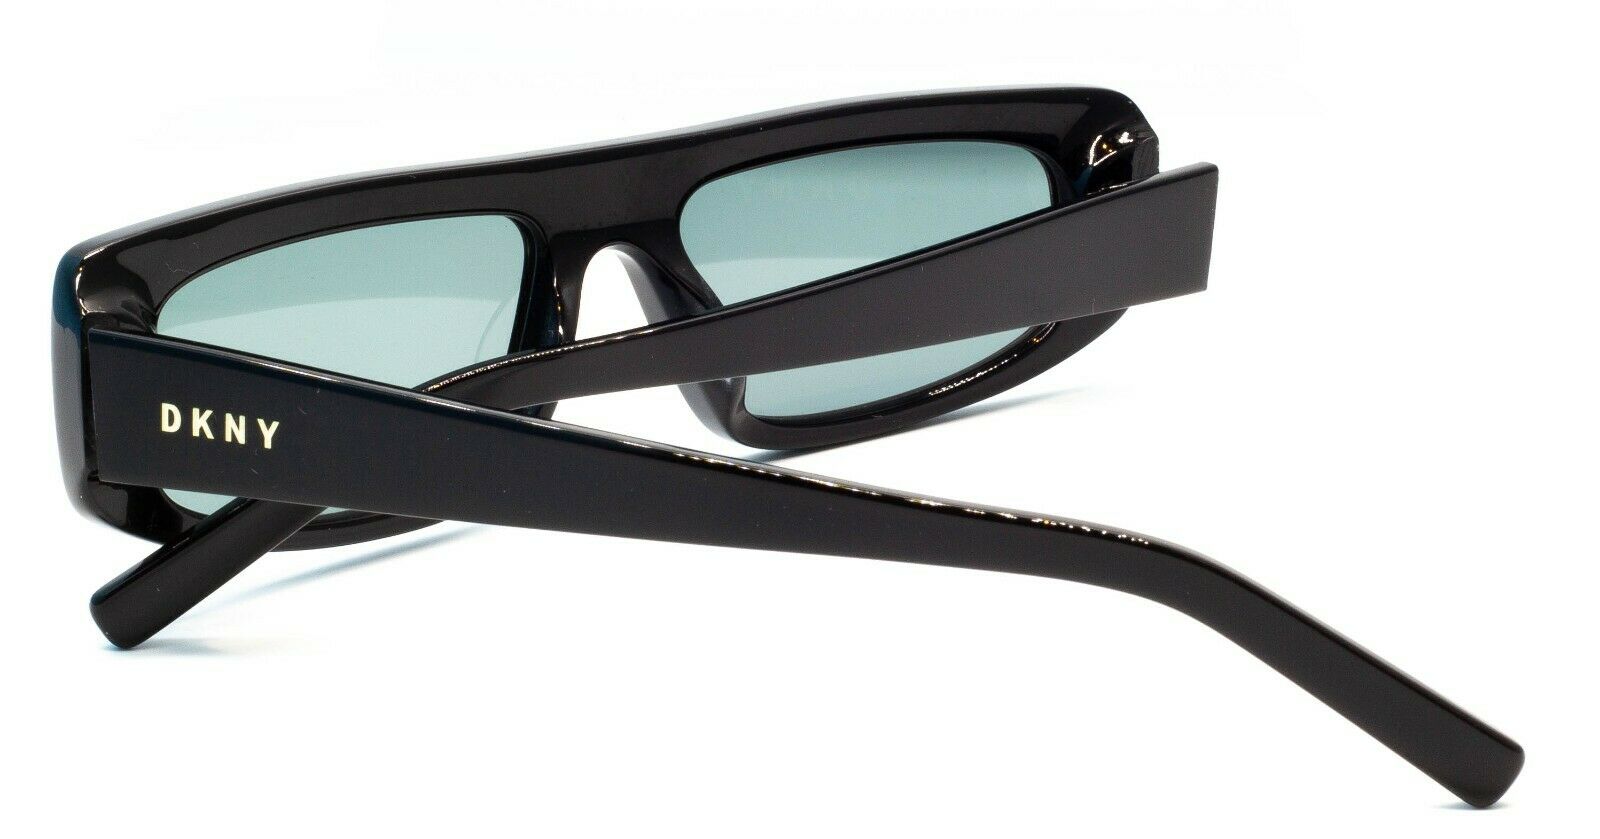 DKNY DK518S 001 51mm #2 Sunglasses RX Optical Glasses - New - GGV